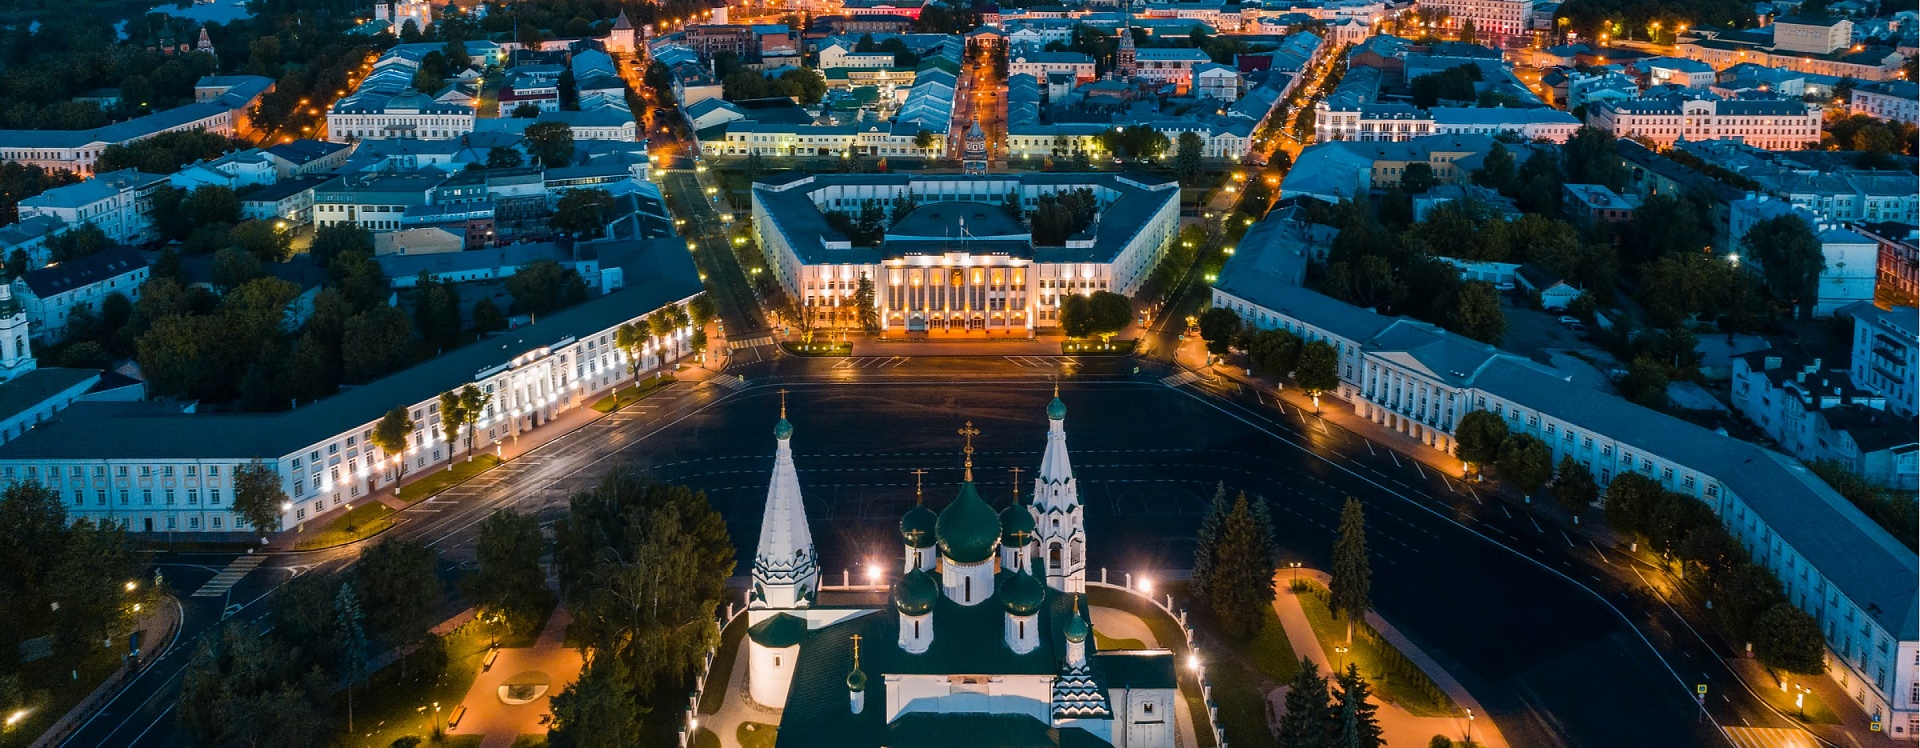 Ярославль фото города 2021